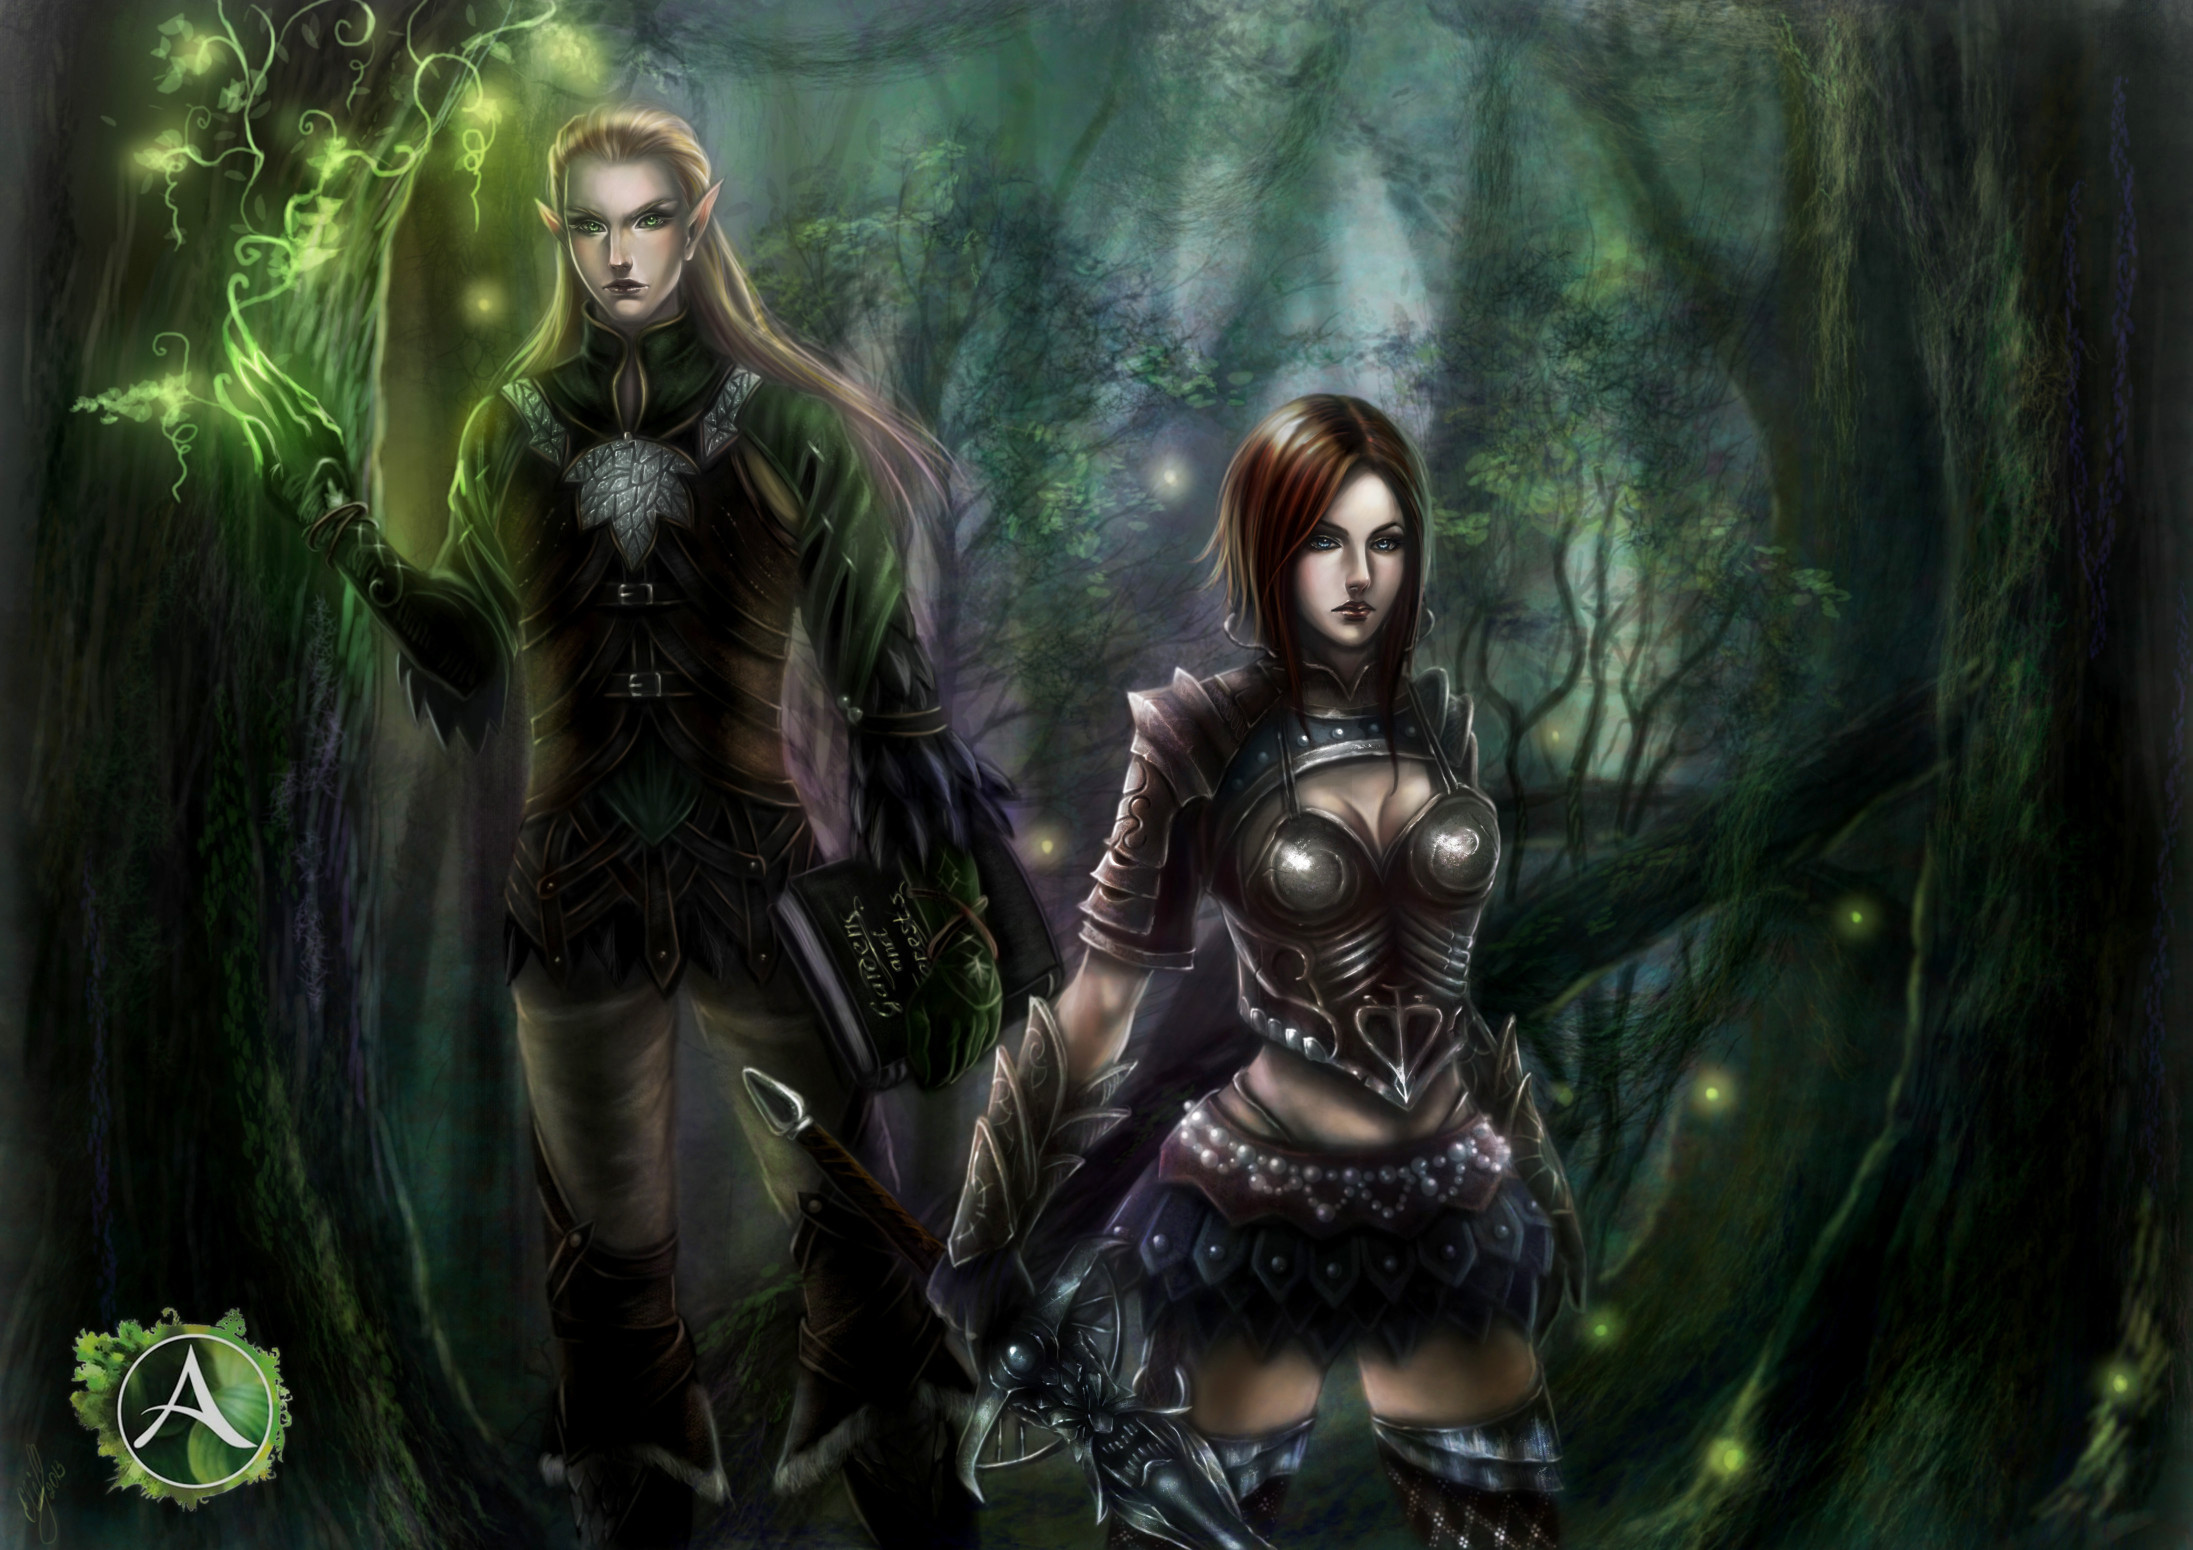 2193x1550 Elves Men Warrior Two Fantasy Girl elf forest magic wallpaper .